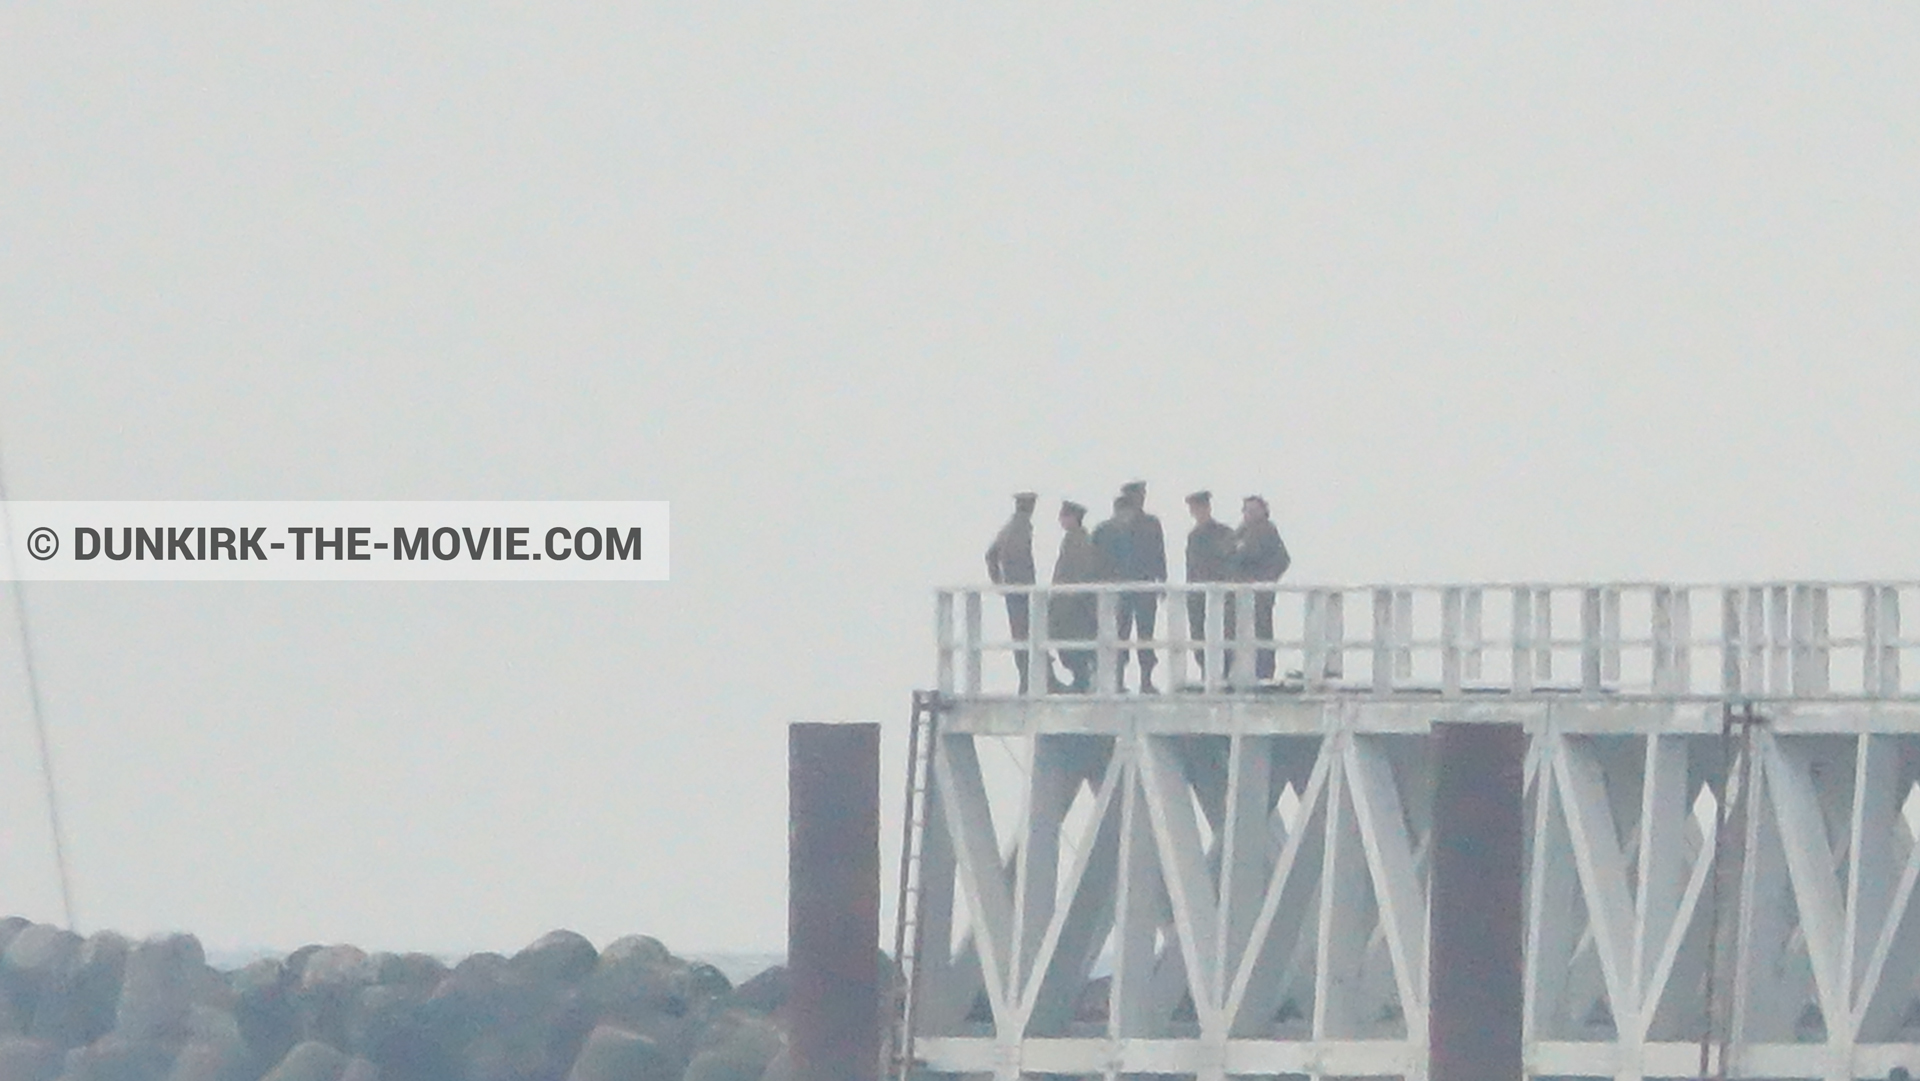 Fotos con actor, cielo gris, muelle del ESTE,  durante el rodaje de la película Dunkerque de Nolan